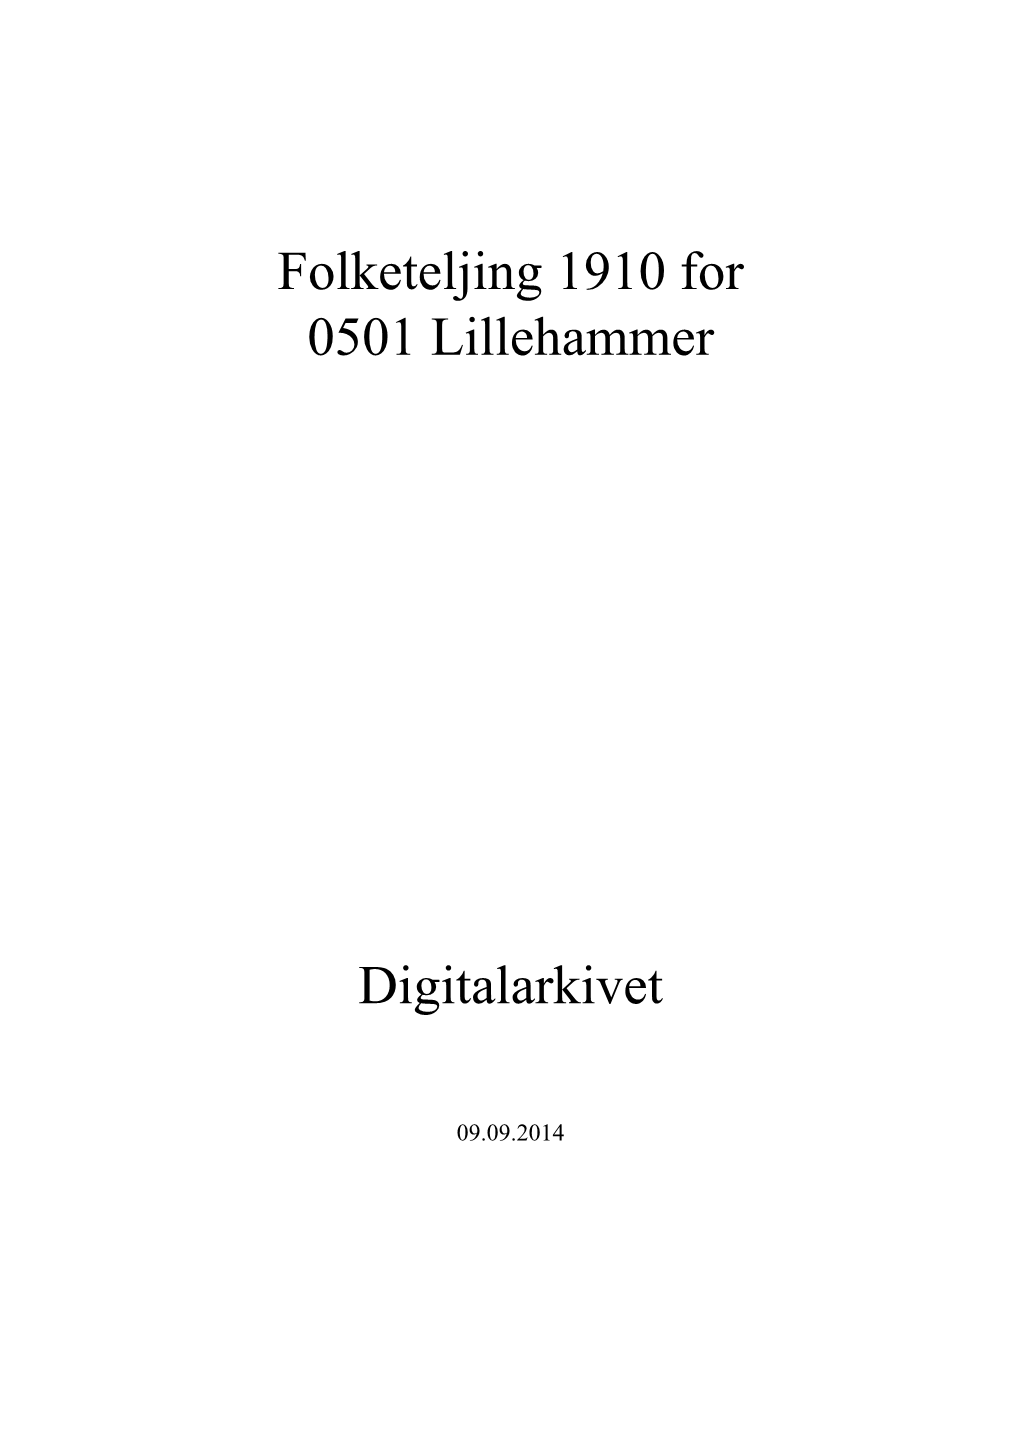 Folketeljing 1910 for 0501 Lillehammer Digitalarkivet